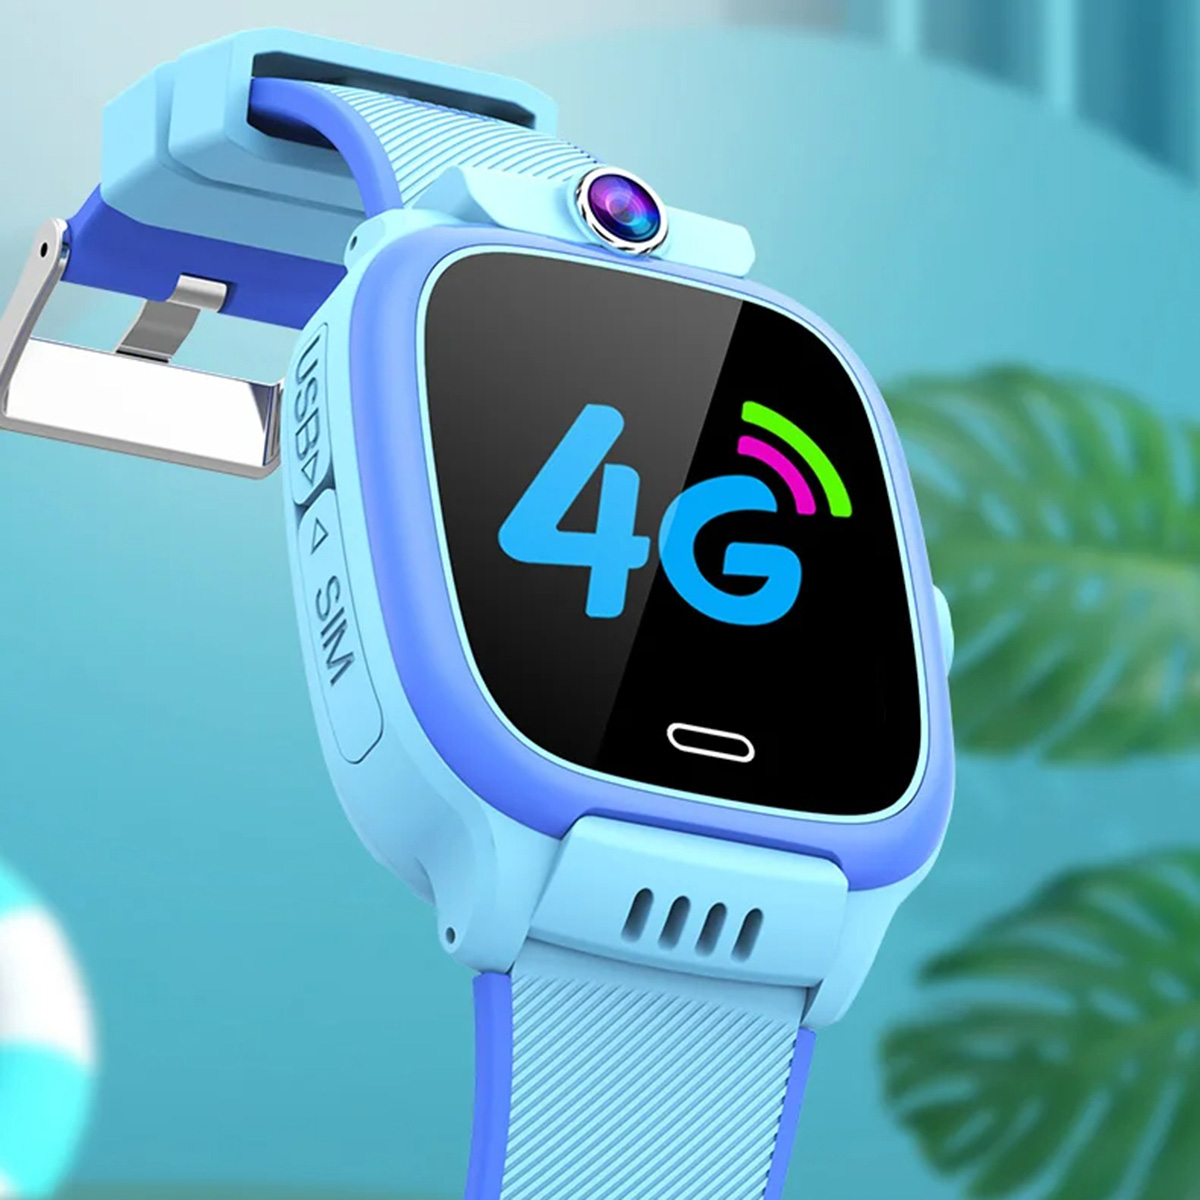 Smartwatch Relógio Inteligente Klack Para Crianças Com Gps Localizador E Comunicação 4g - Azul